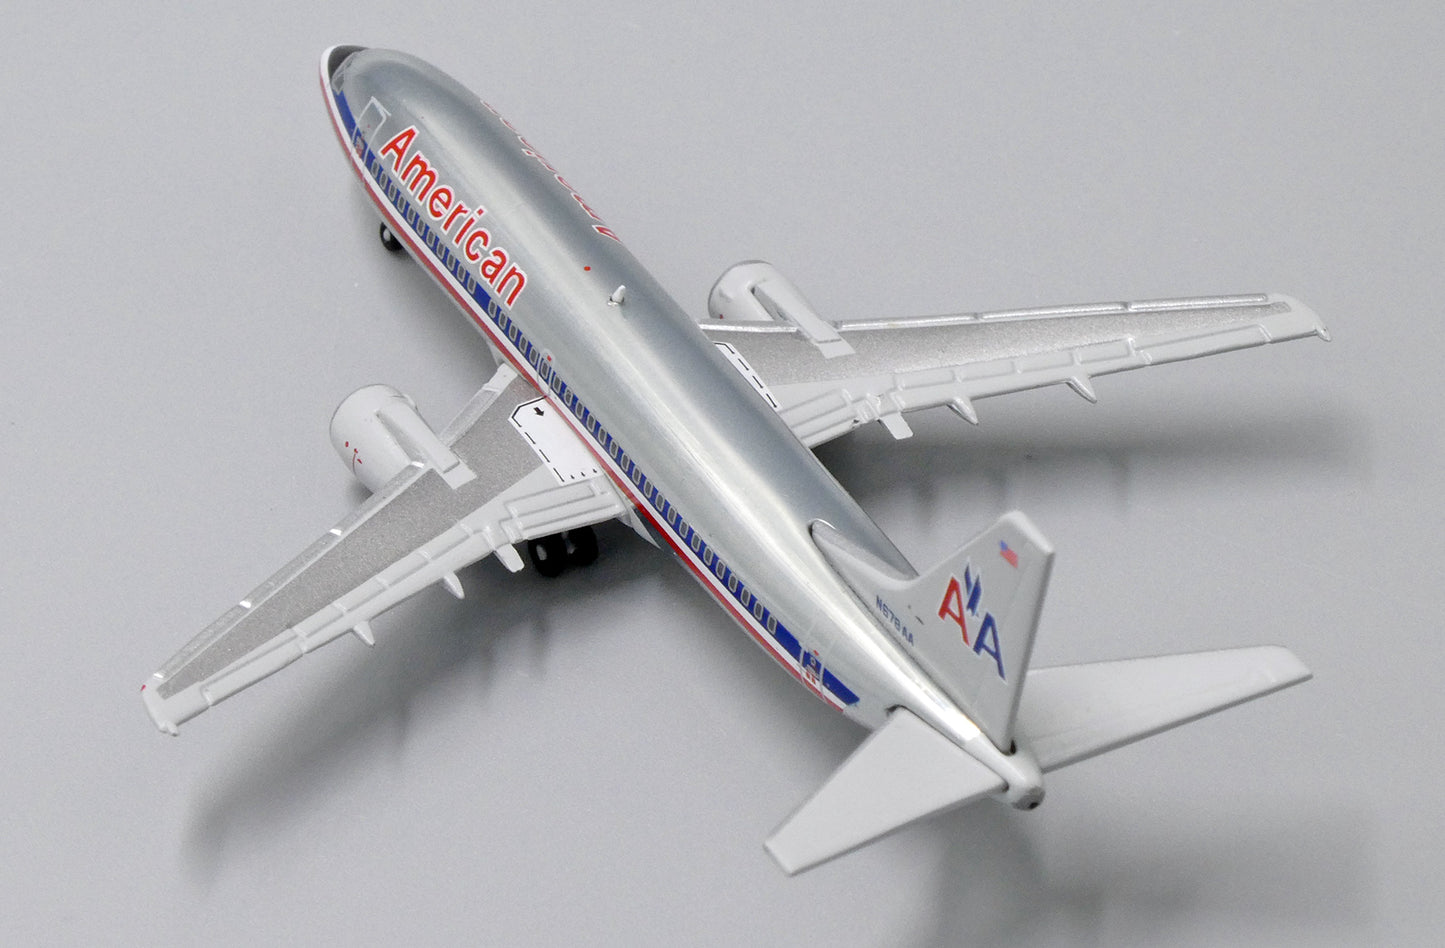 1:400 JC Wings American Airlines Boeing 737-300 N678AA LH4049